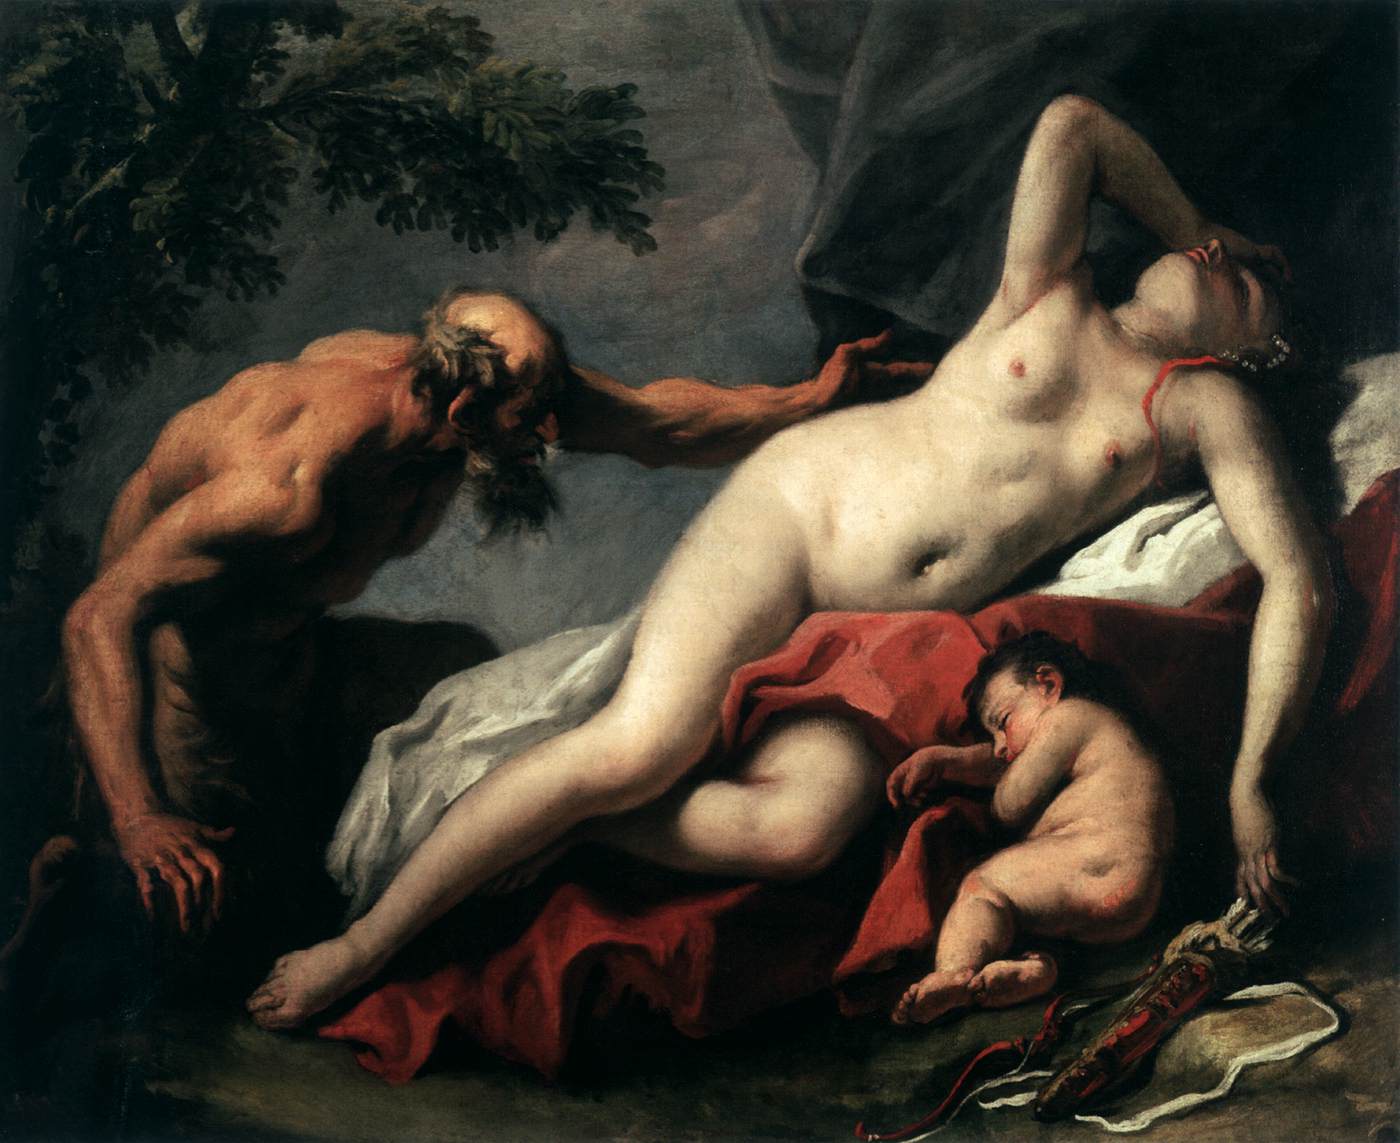 Venus and Satyr by Sebastiano Ricci